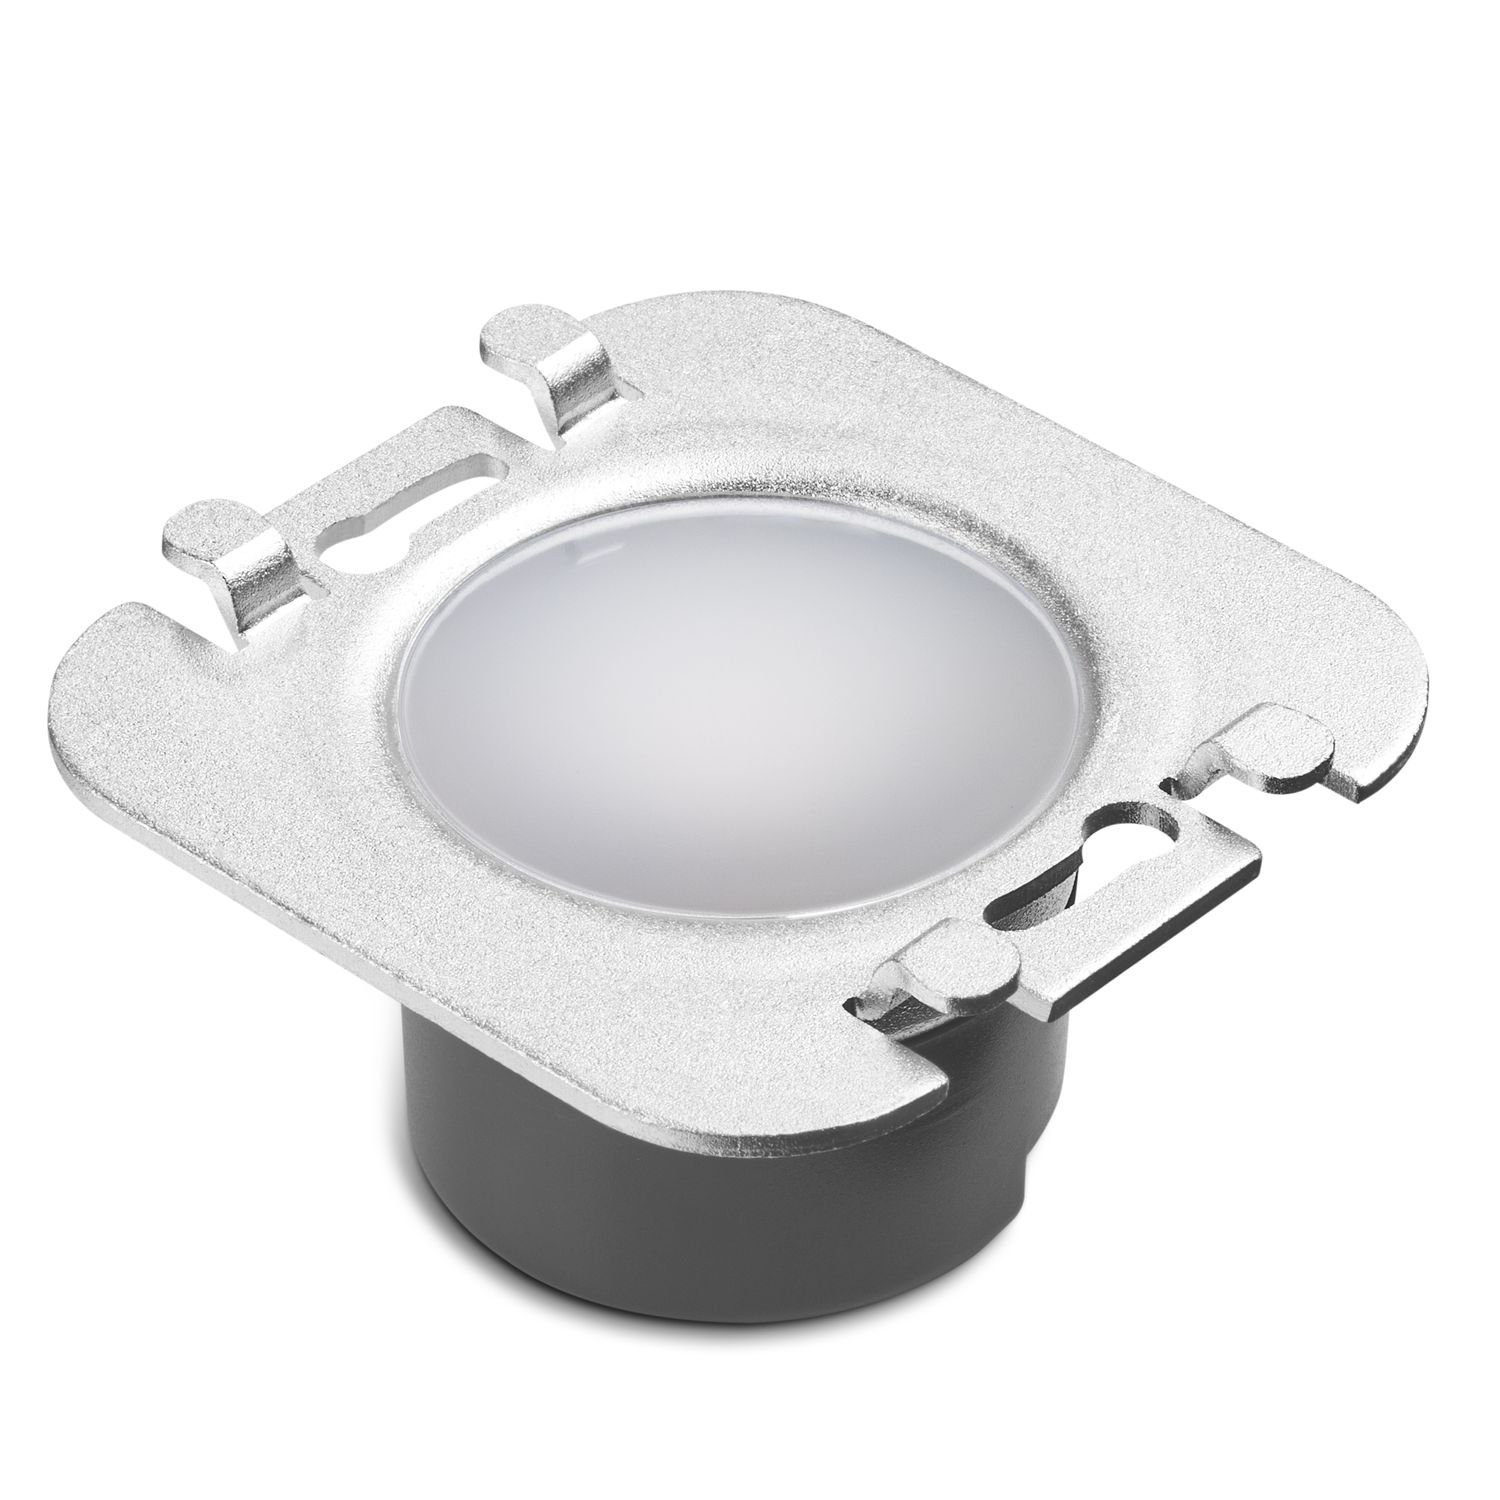 für Wifi LED Einbaustrahler Treppenbeleuchtung in LEDANDO weiss weiß Schalterdose LED eckig KID /